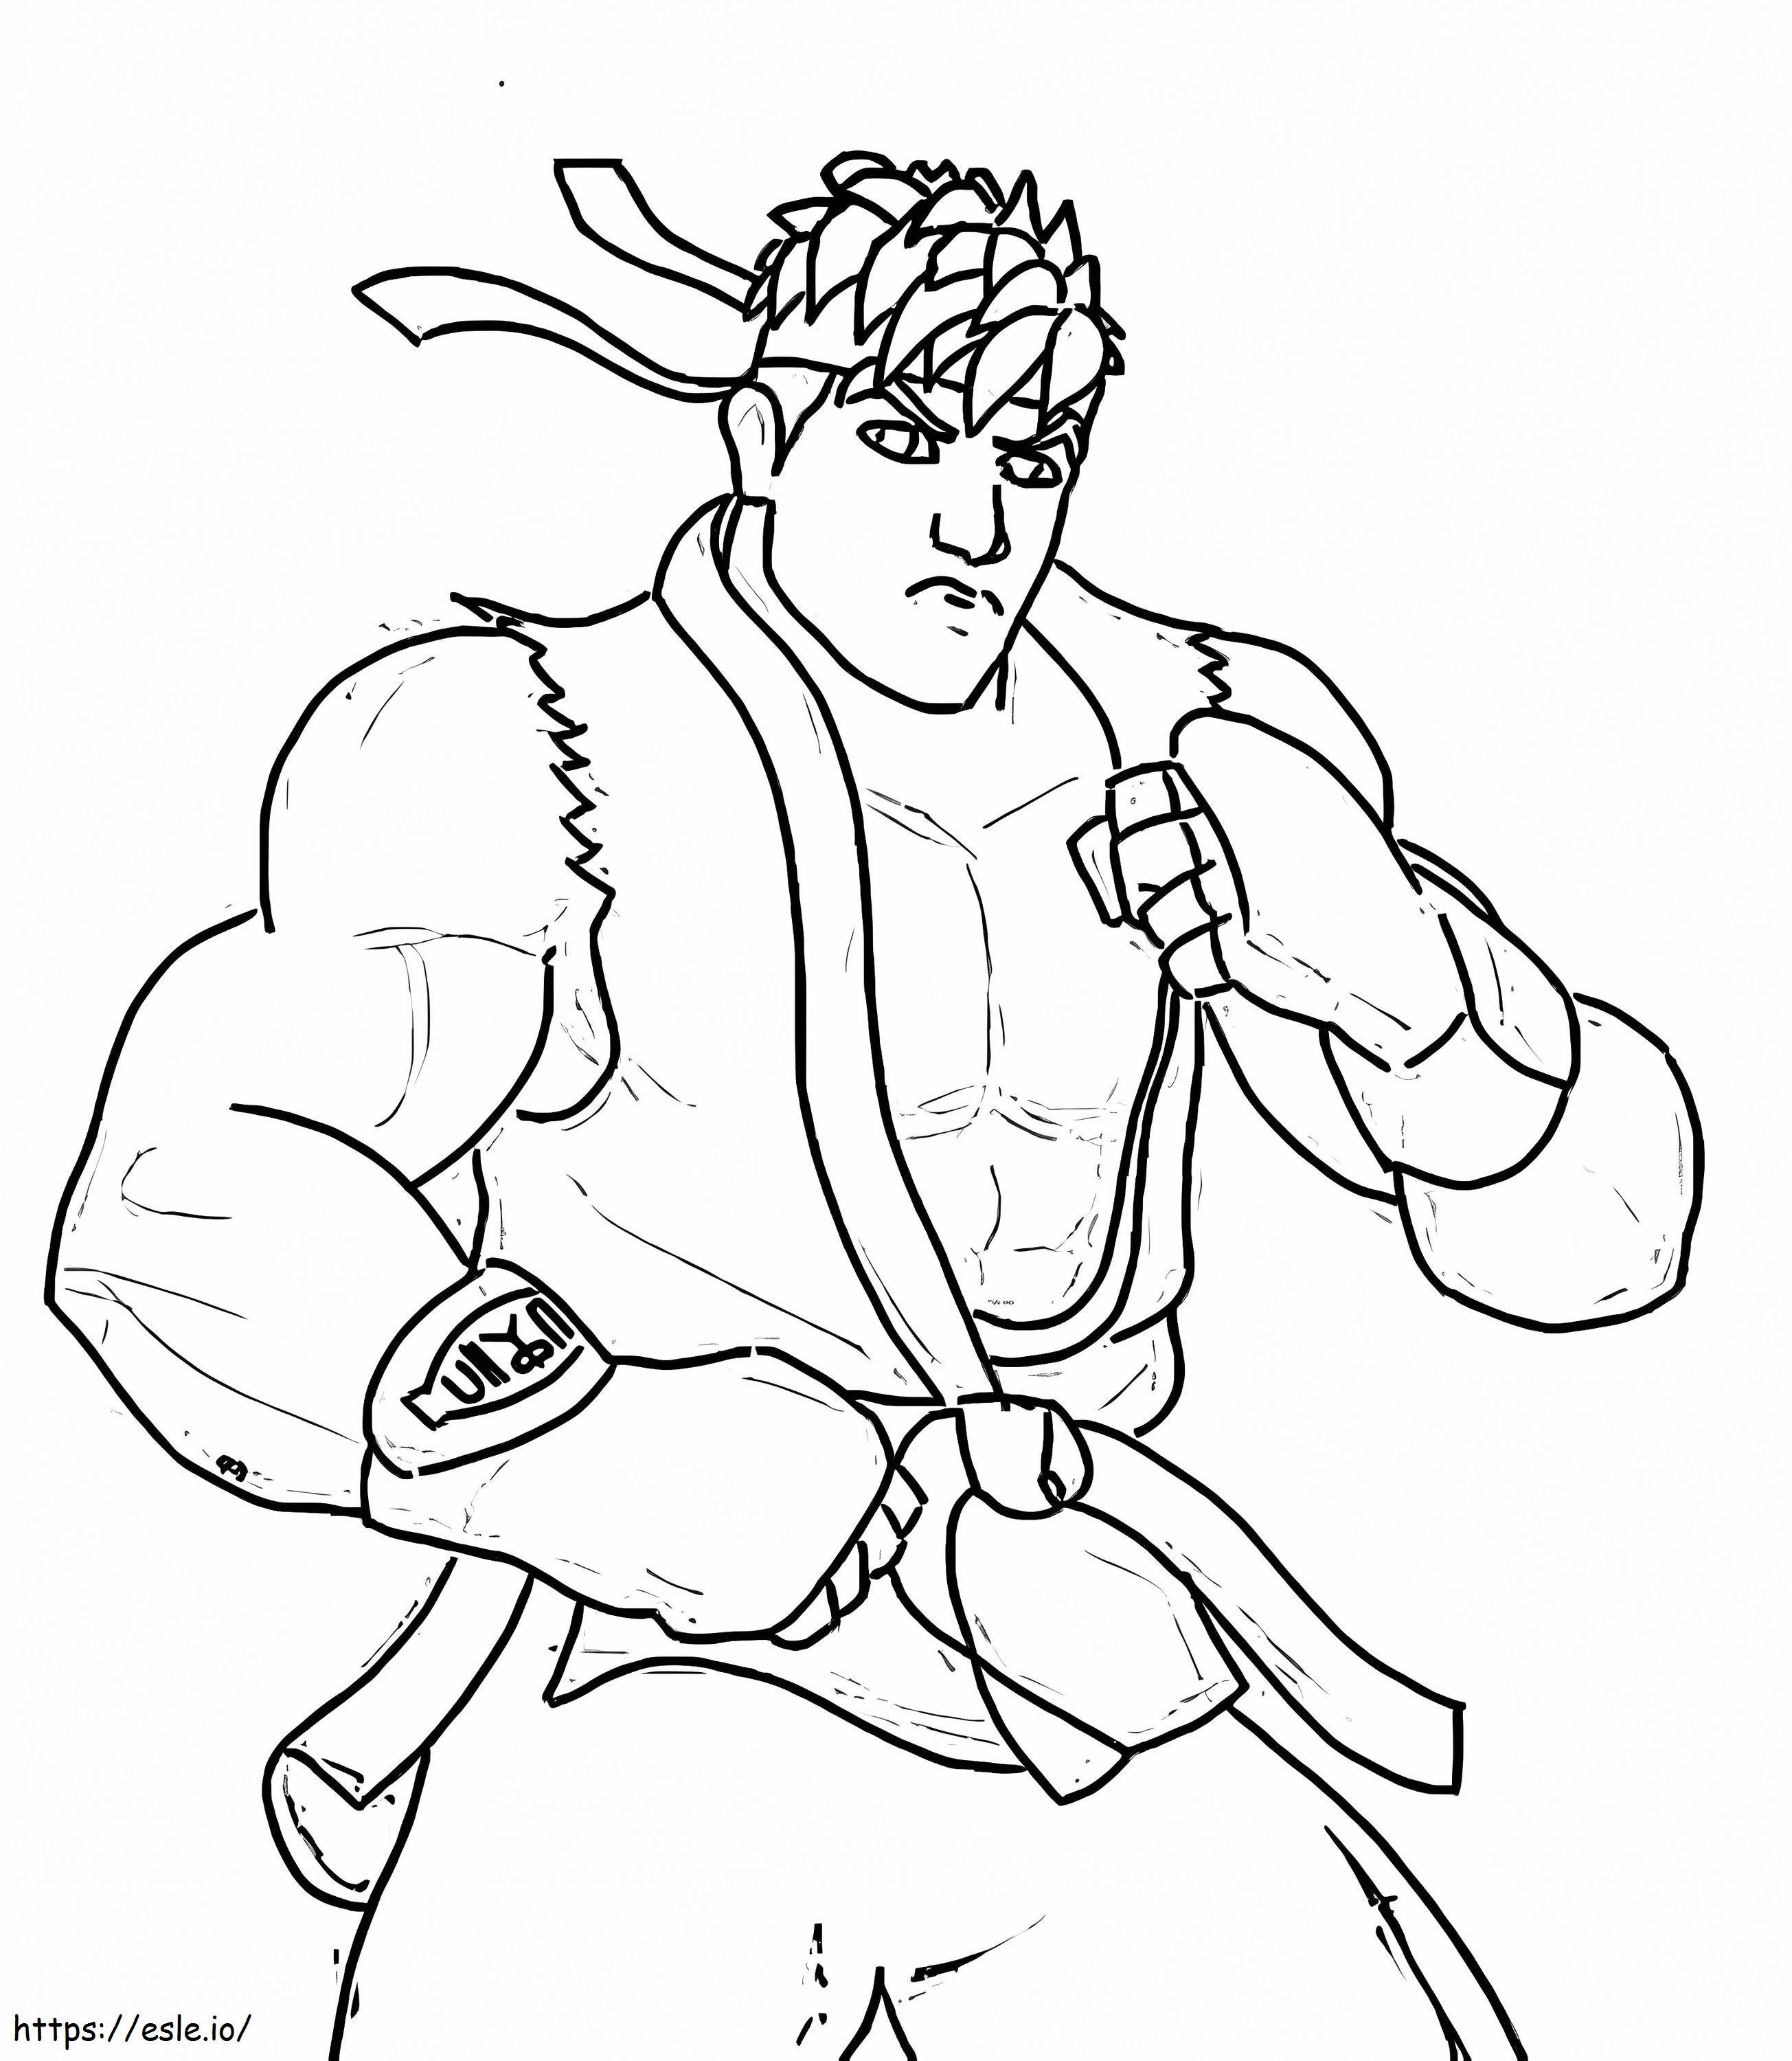 Ryu básico para colorear